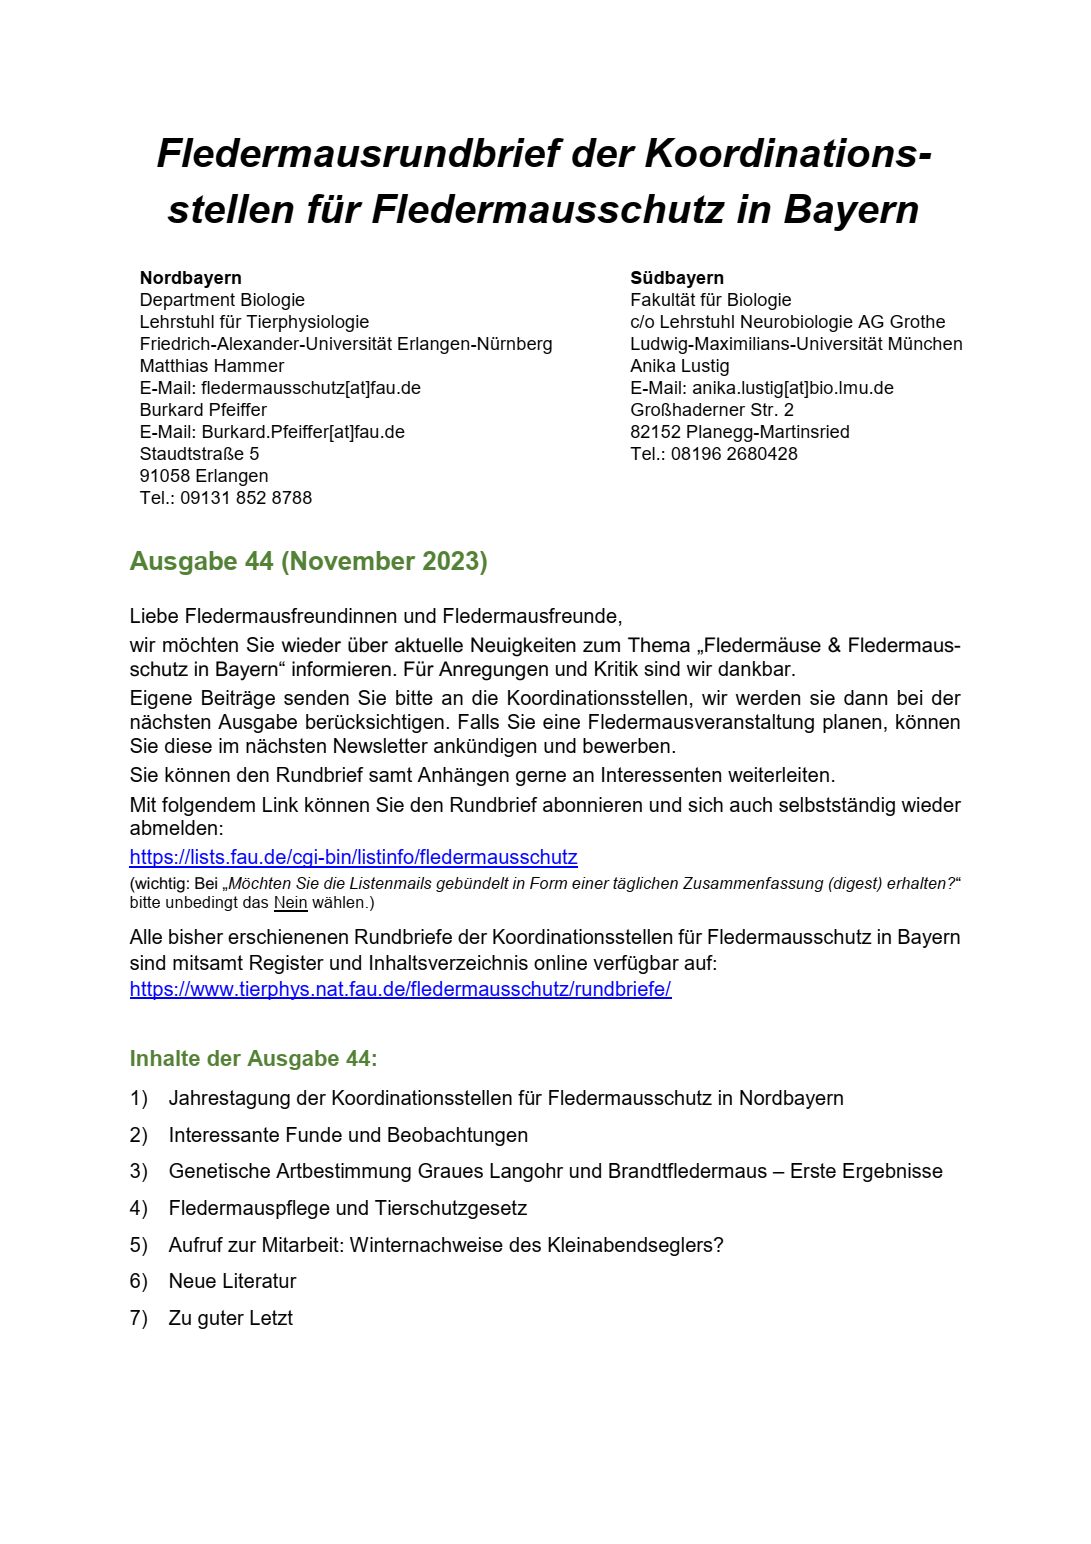 Rundbrief Nr. 44 der Koordinationsstellen für Fledermausschutz in Bayern